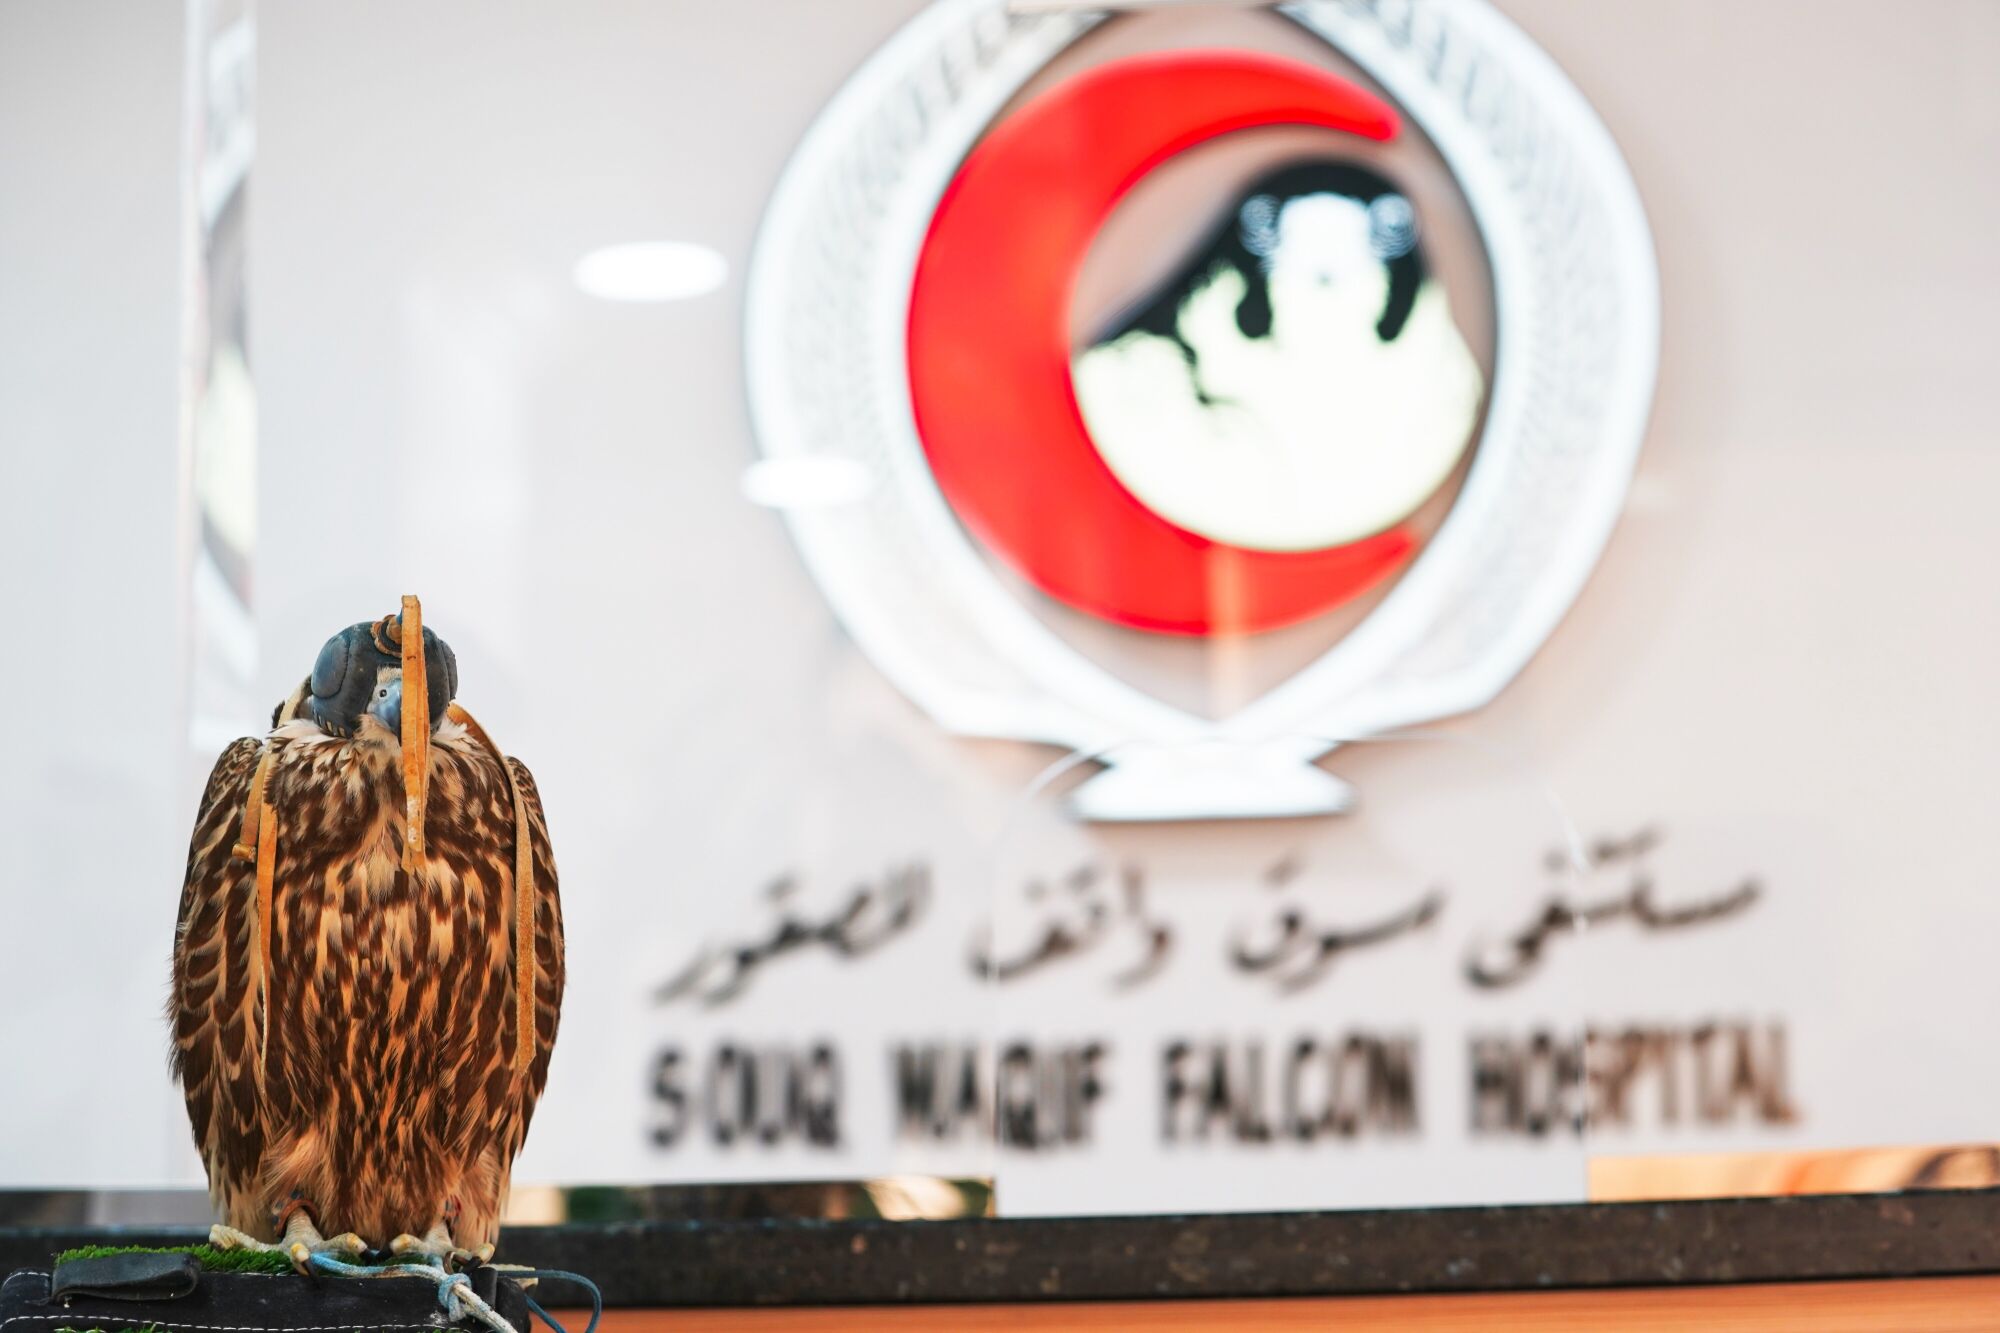 Un falco pellegrino attende una procedura al Souq Waqif Falcon Hospital.